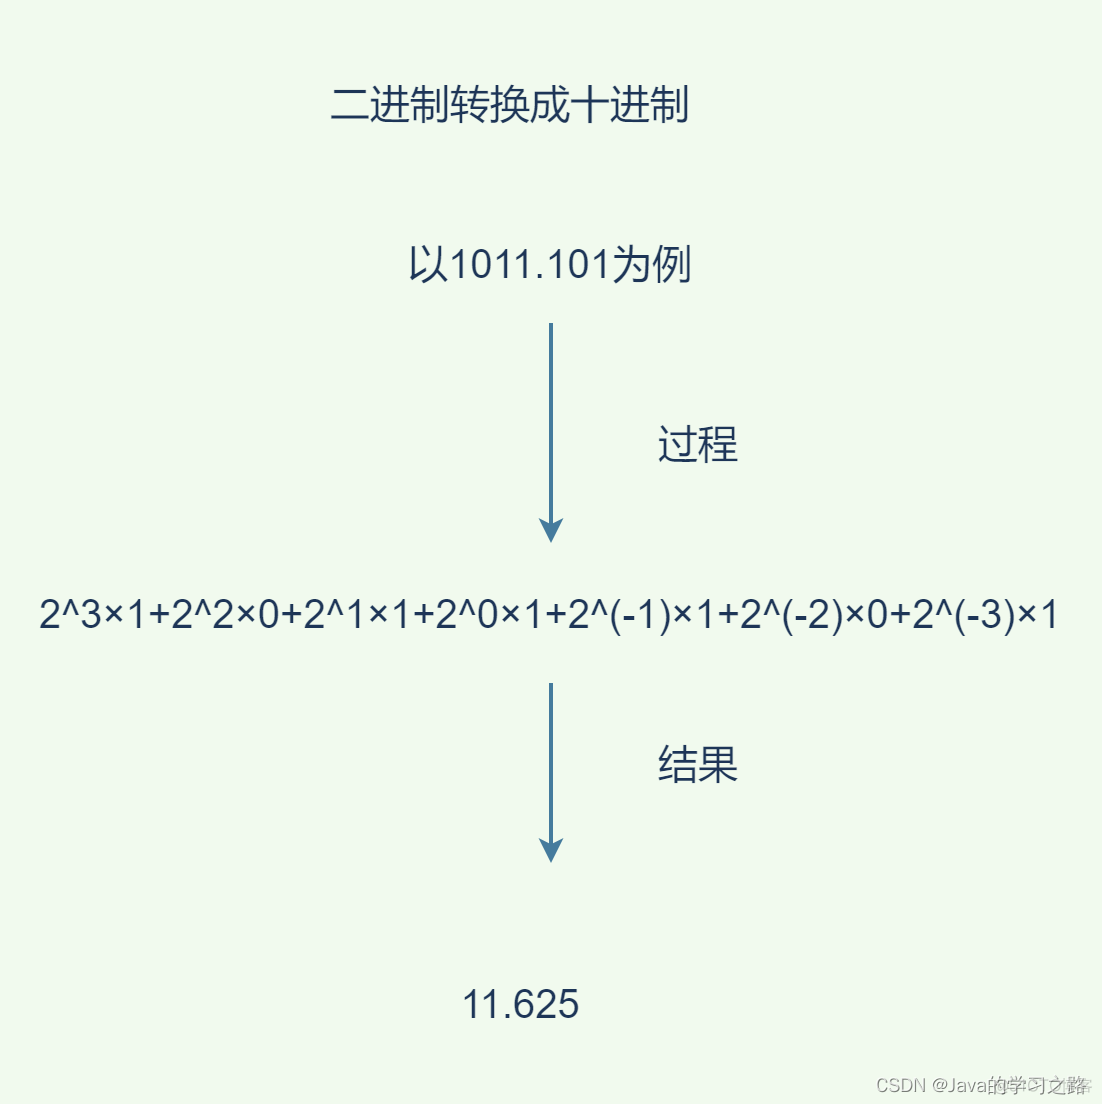 计算机组成原理-第二章 数据表示与运算_浮点数_07